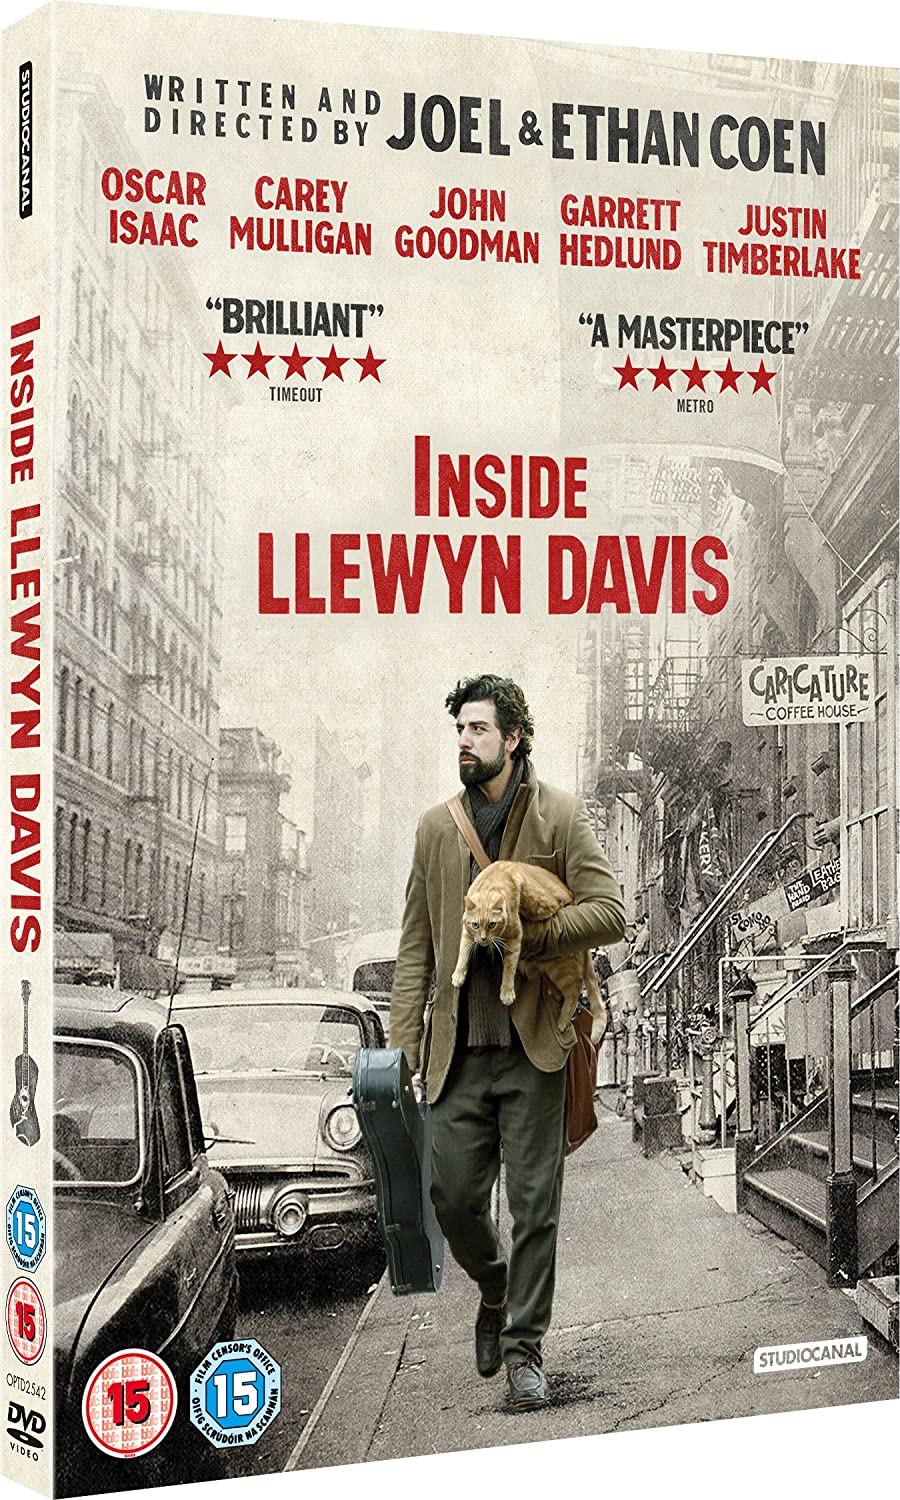 Inside Llewyn Davis [2014] - Drama/Music [DVD]